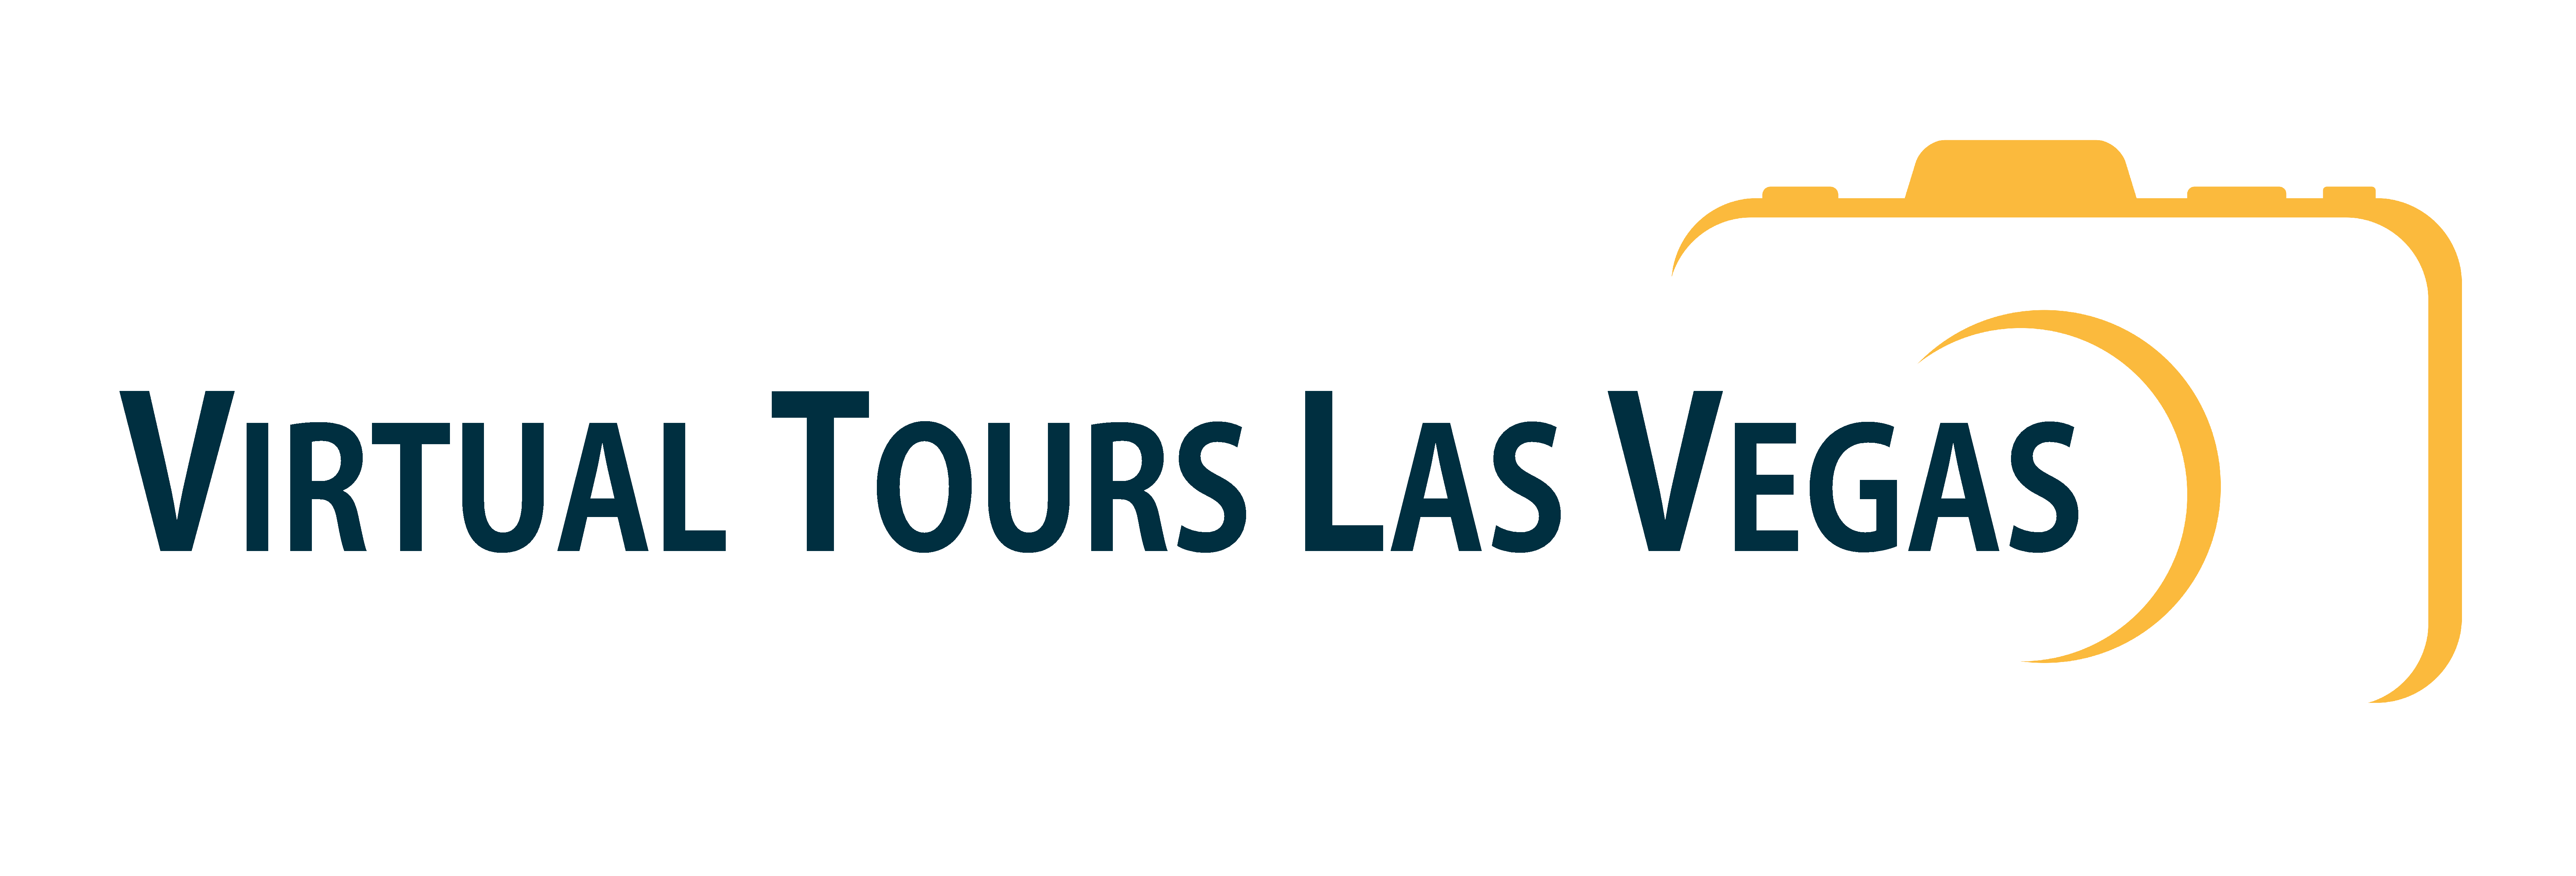 Virtual Tours Las Vegas - Las Vegas 3D Virtual Tour Provider